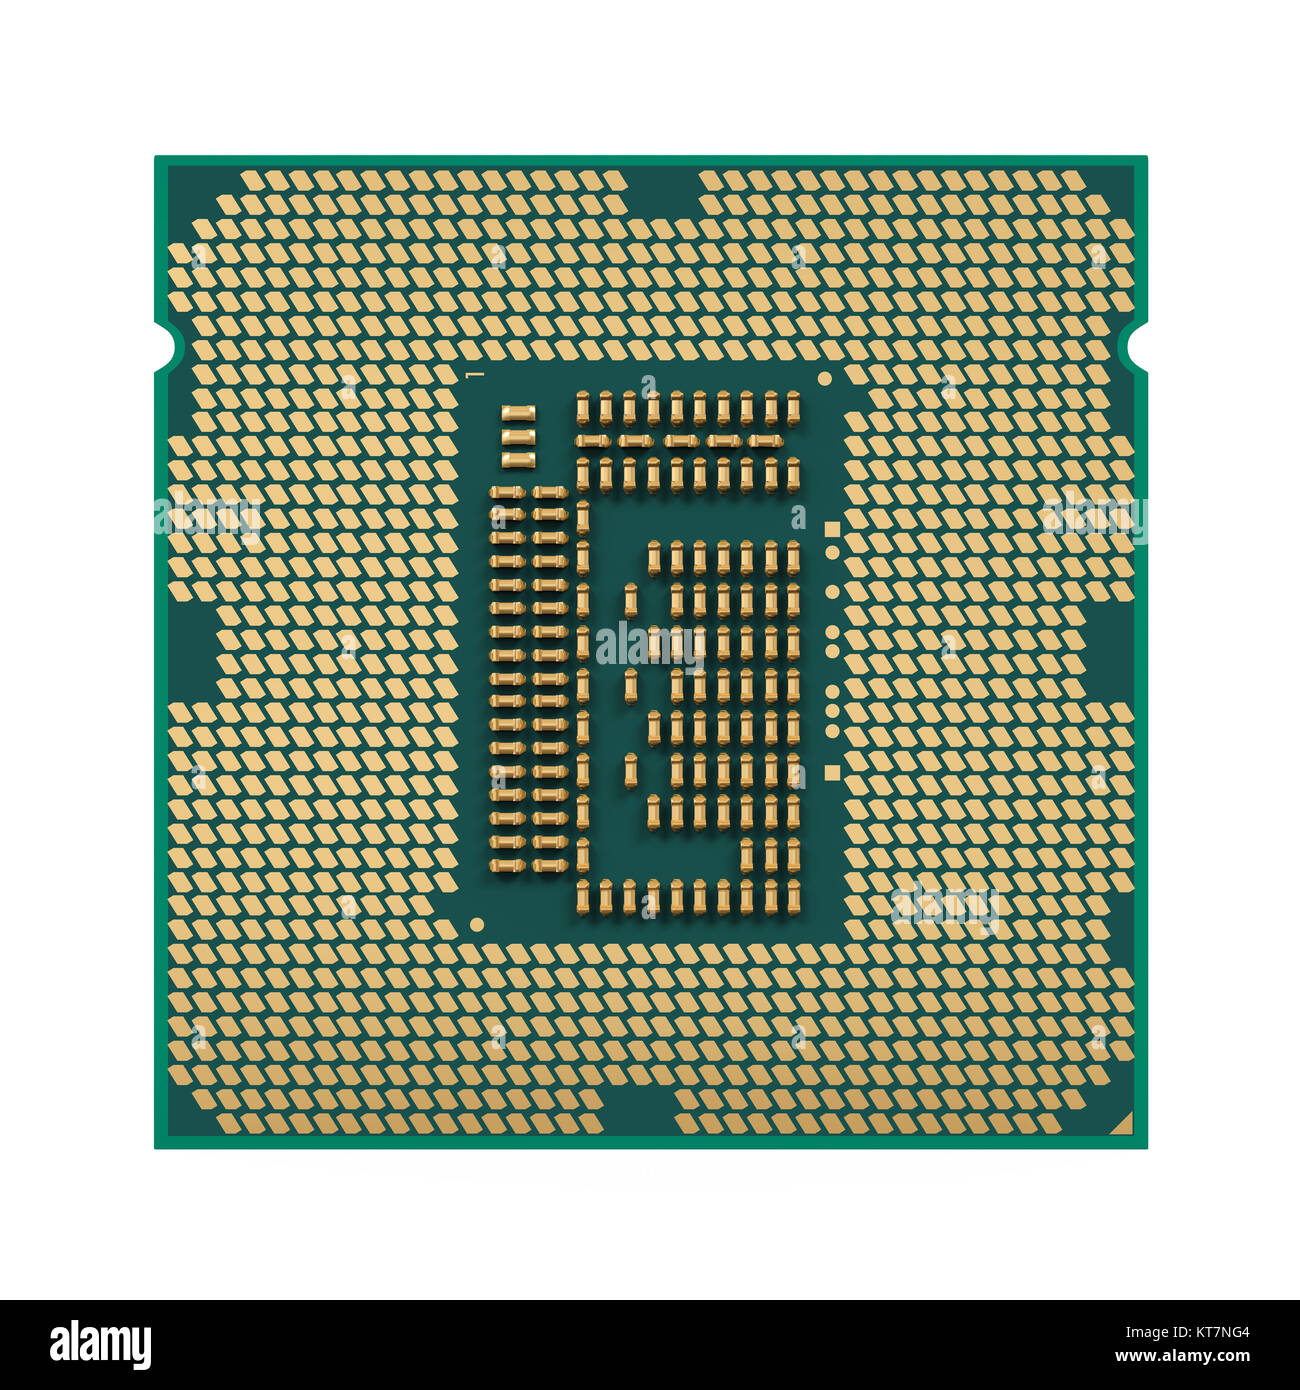 Computer processore CPU isolato Foto Stock